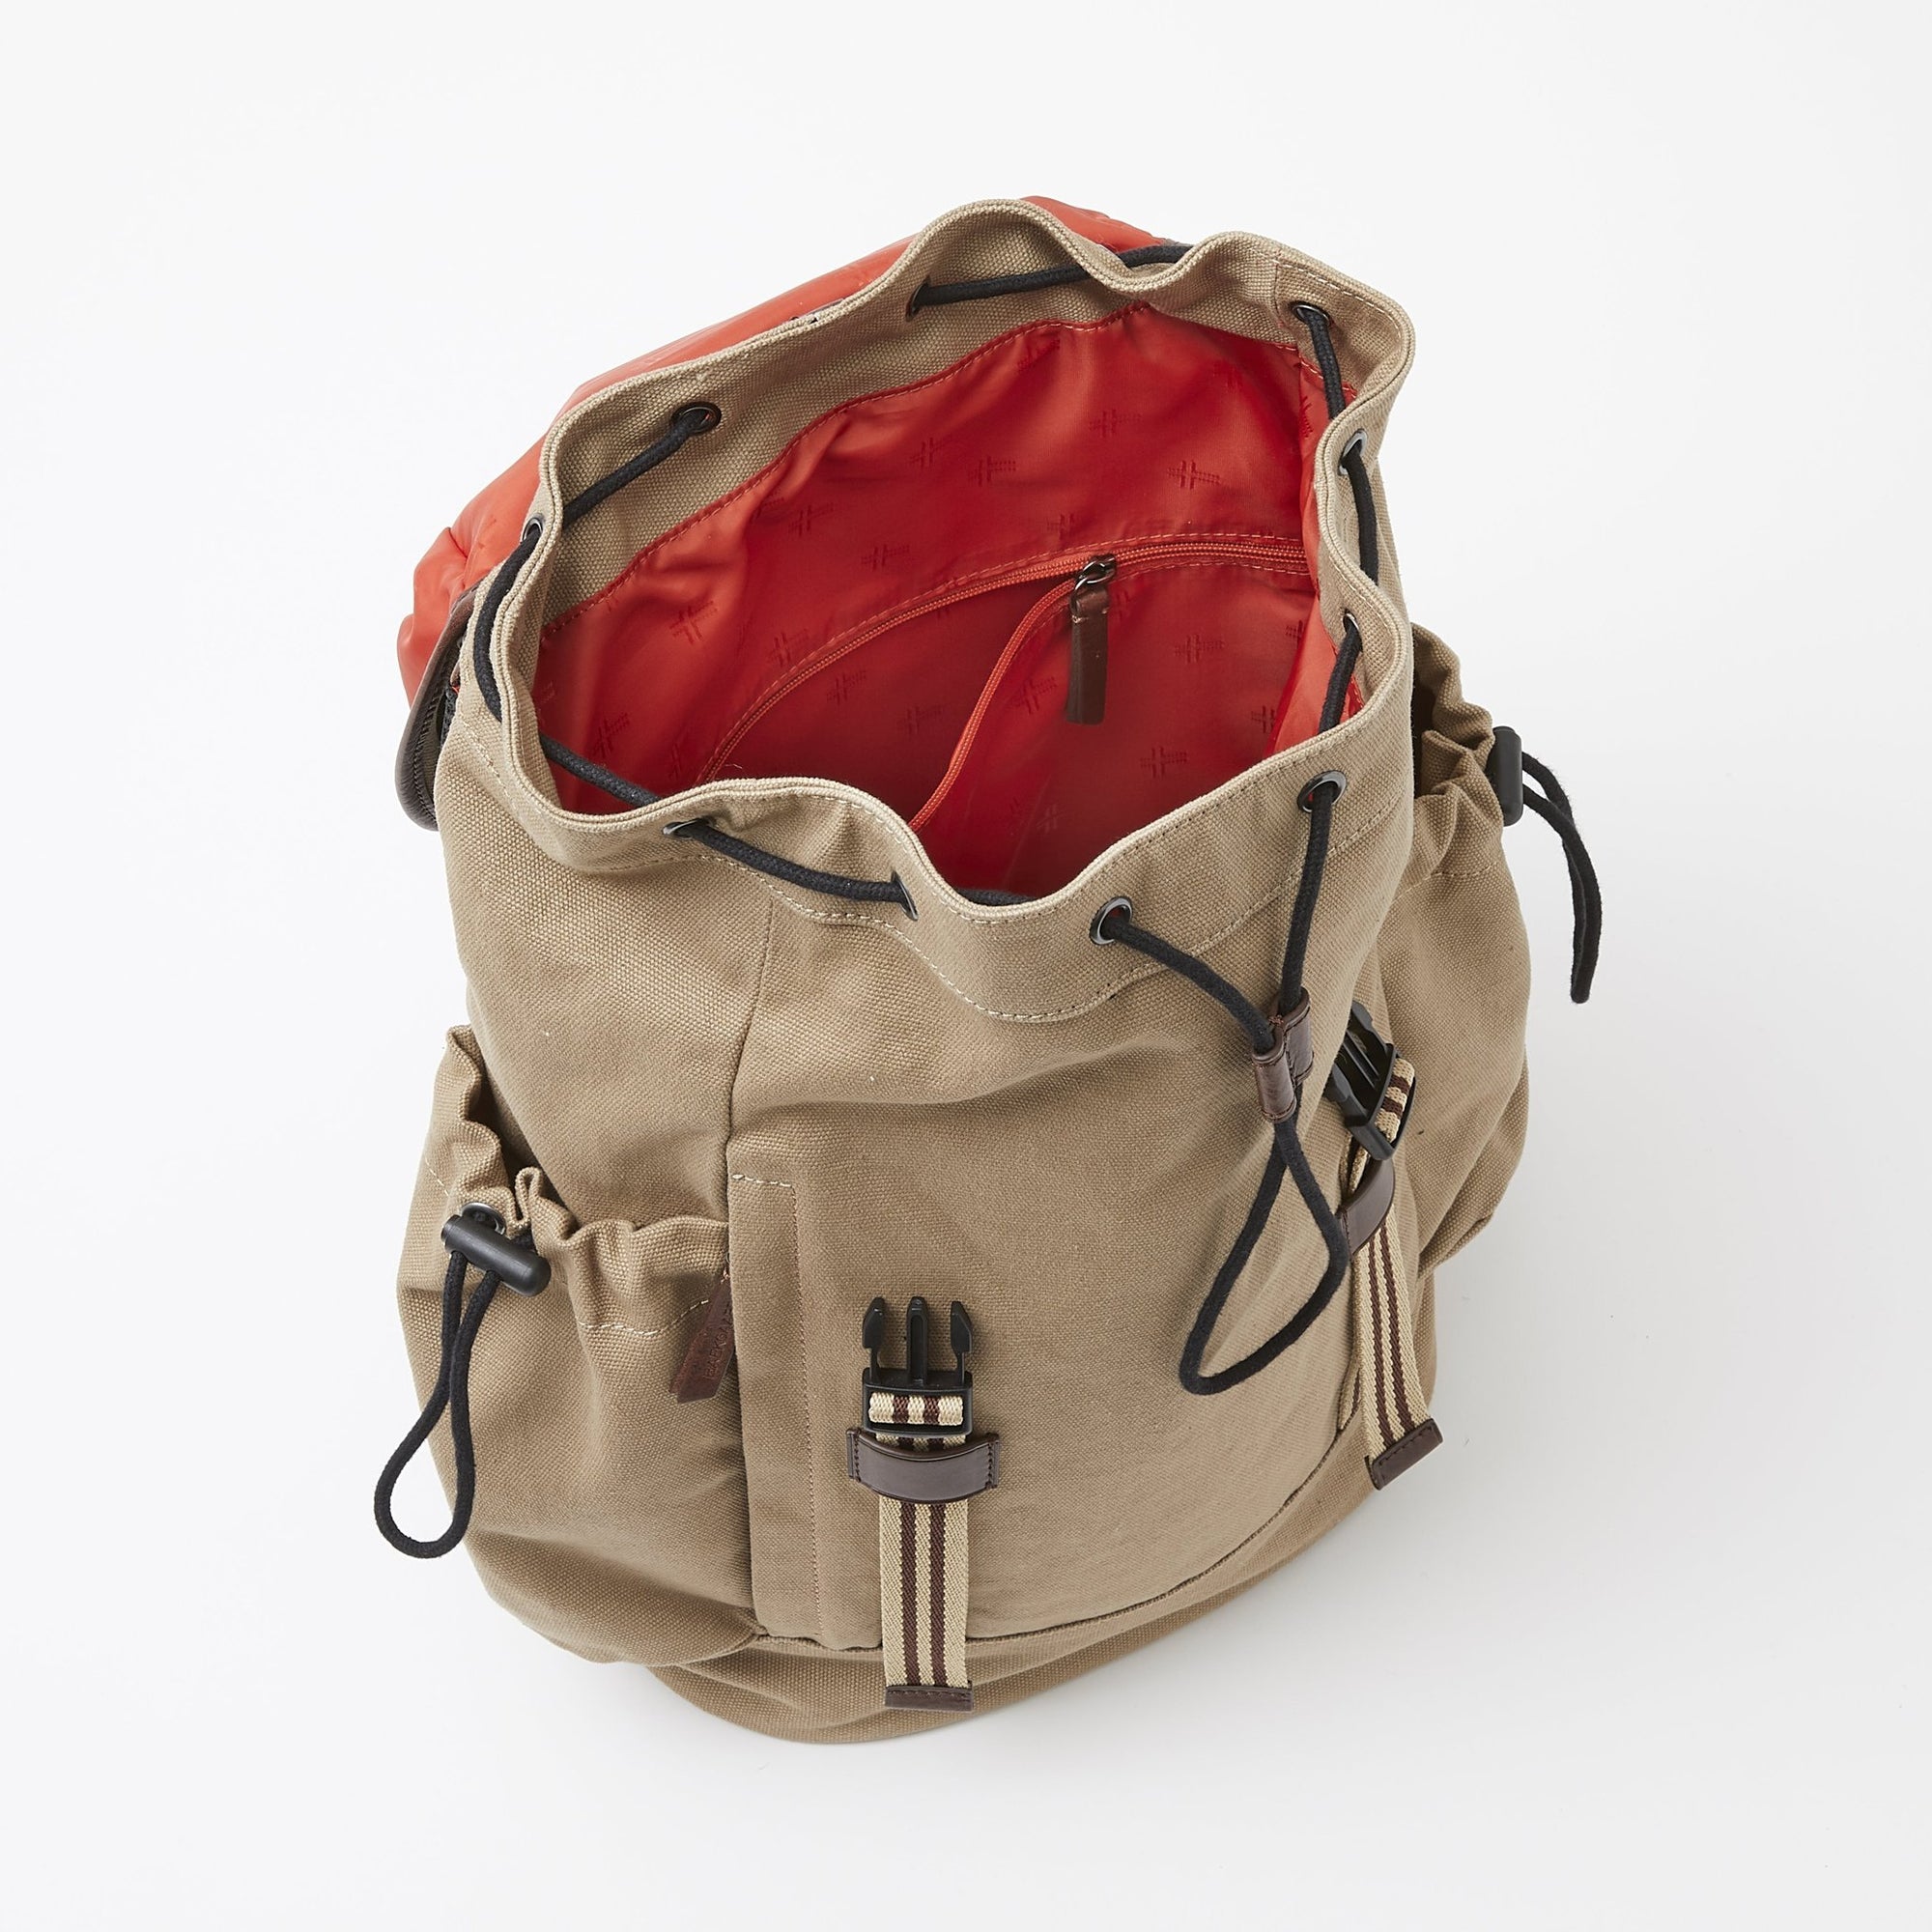 Sloan Backpack in Desert Canvas by Baekgaard